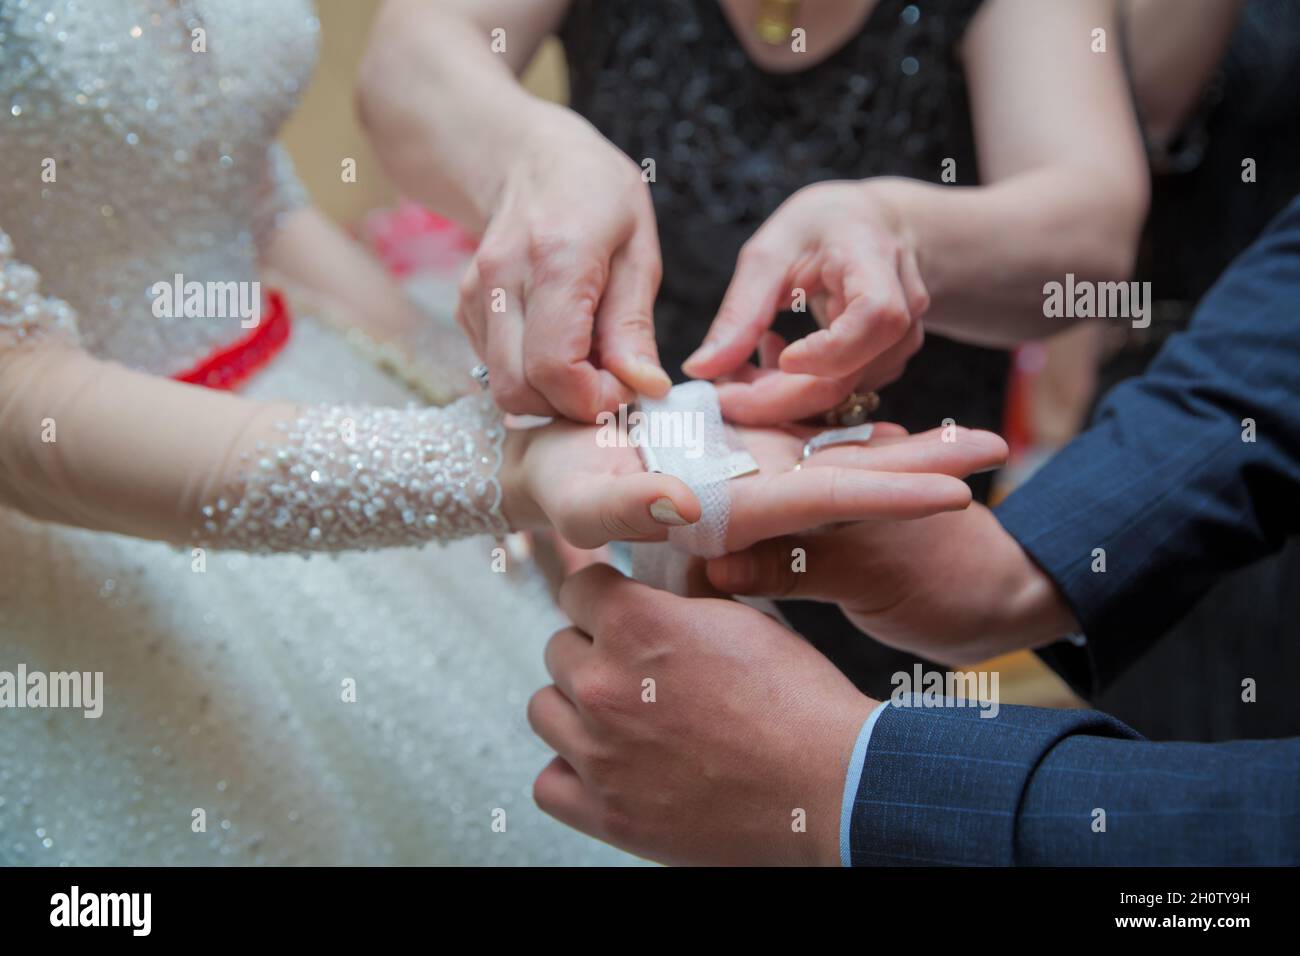 Die Braut legt ihr das Taschentuch in die Hände. Die Hand der Braut ist am Bogen befestigt Stockfoto